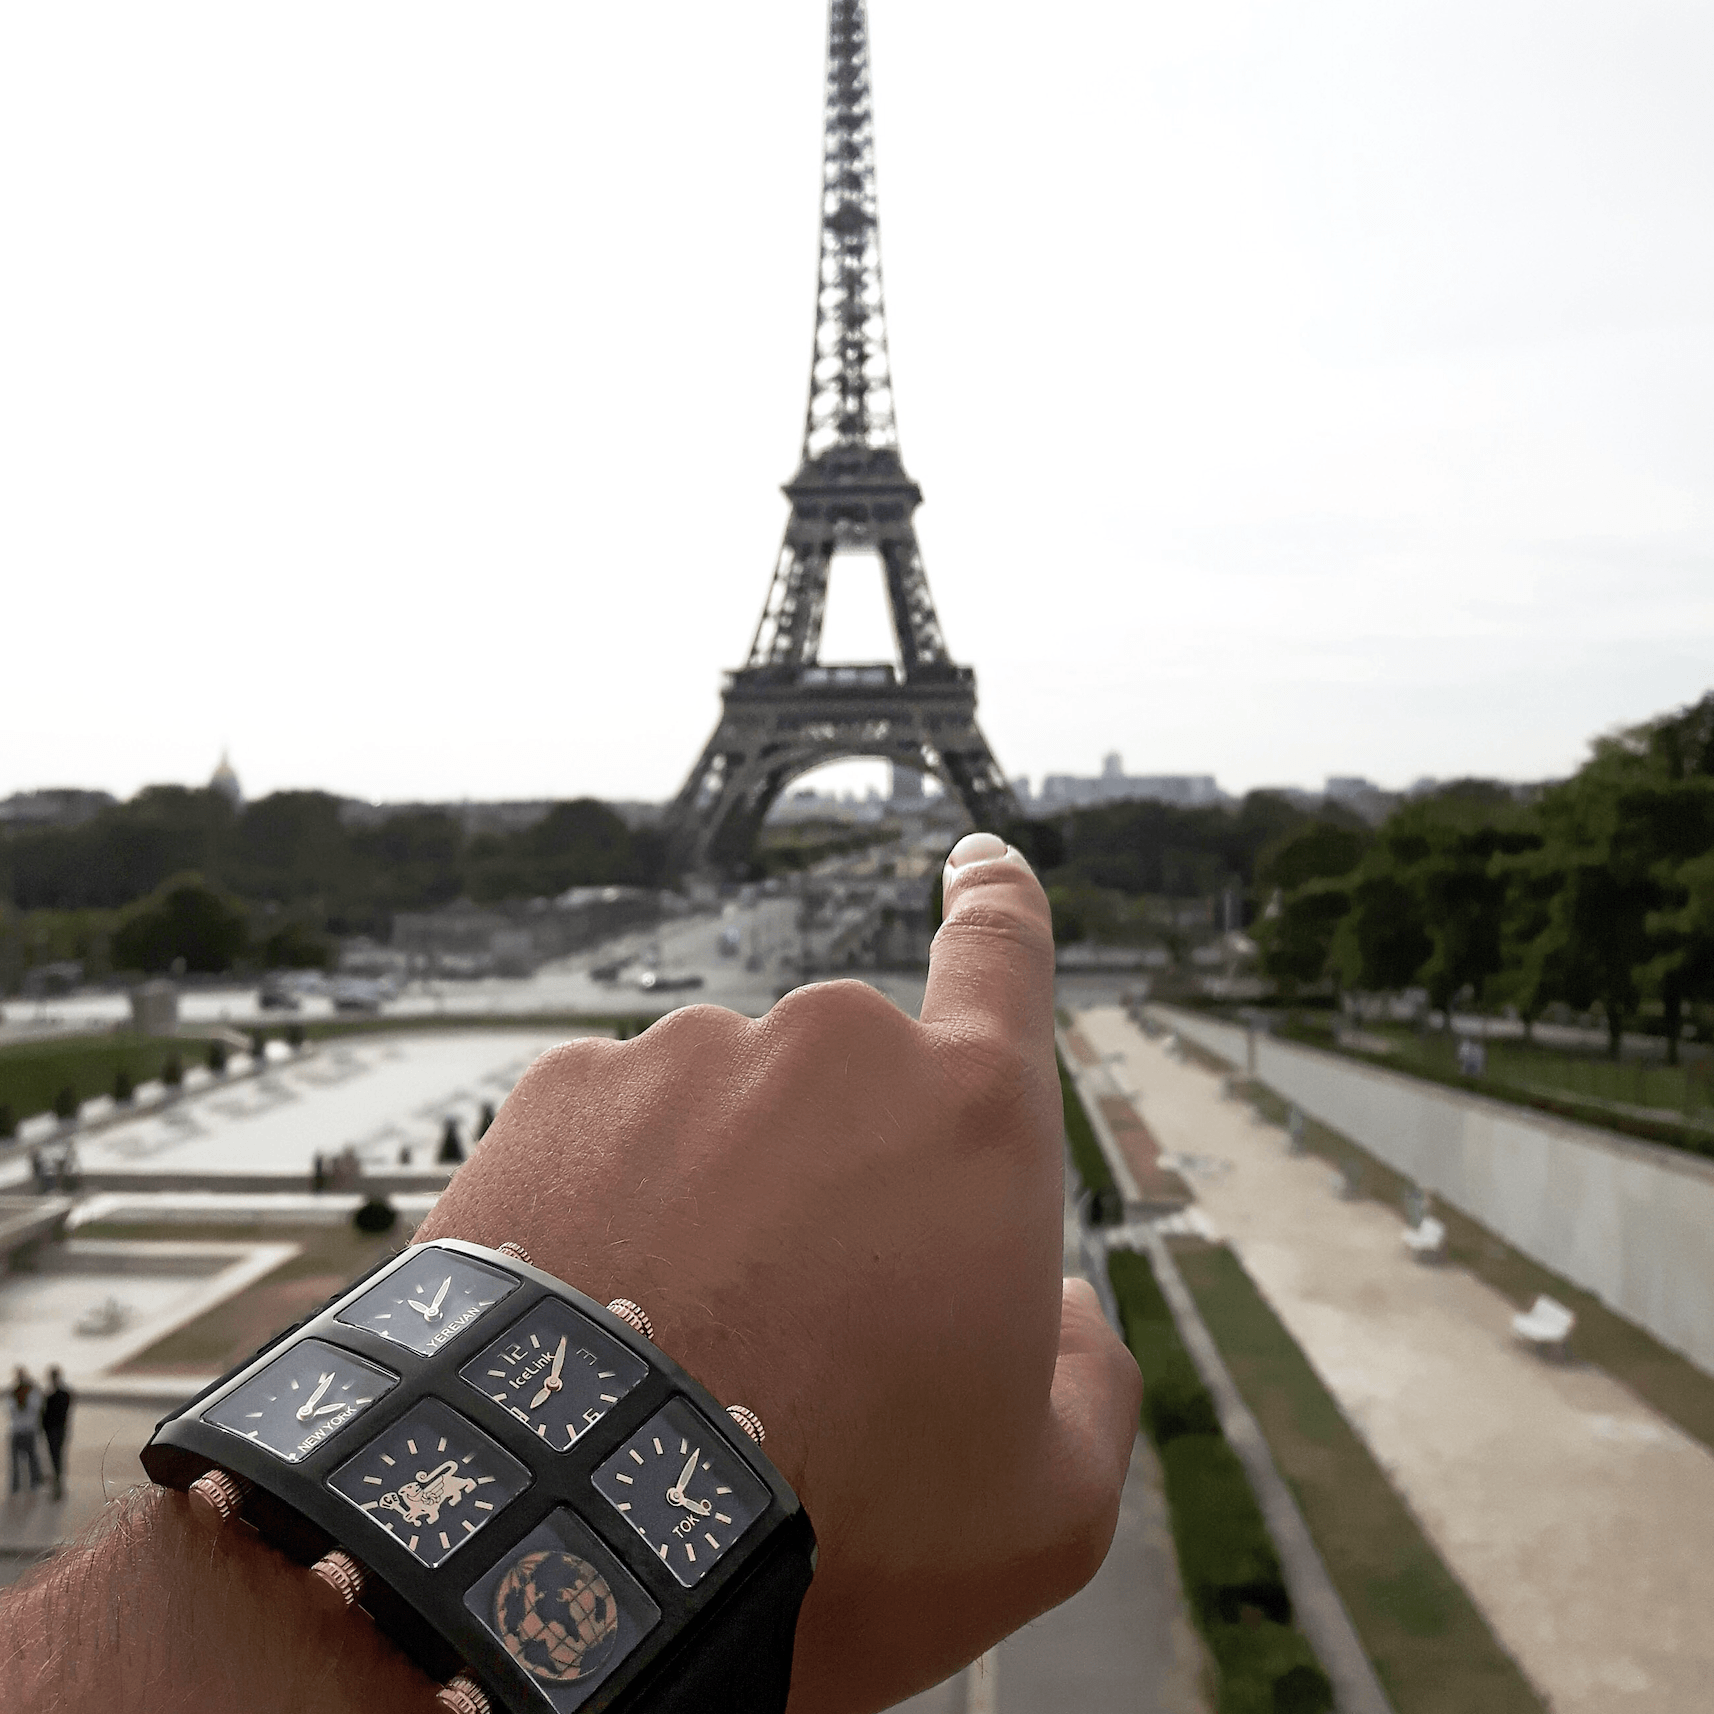 Nero Satin 6TZ Watch (Sample Sale) Watches IceLink-ES   